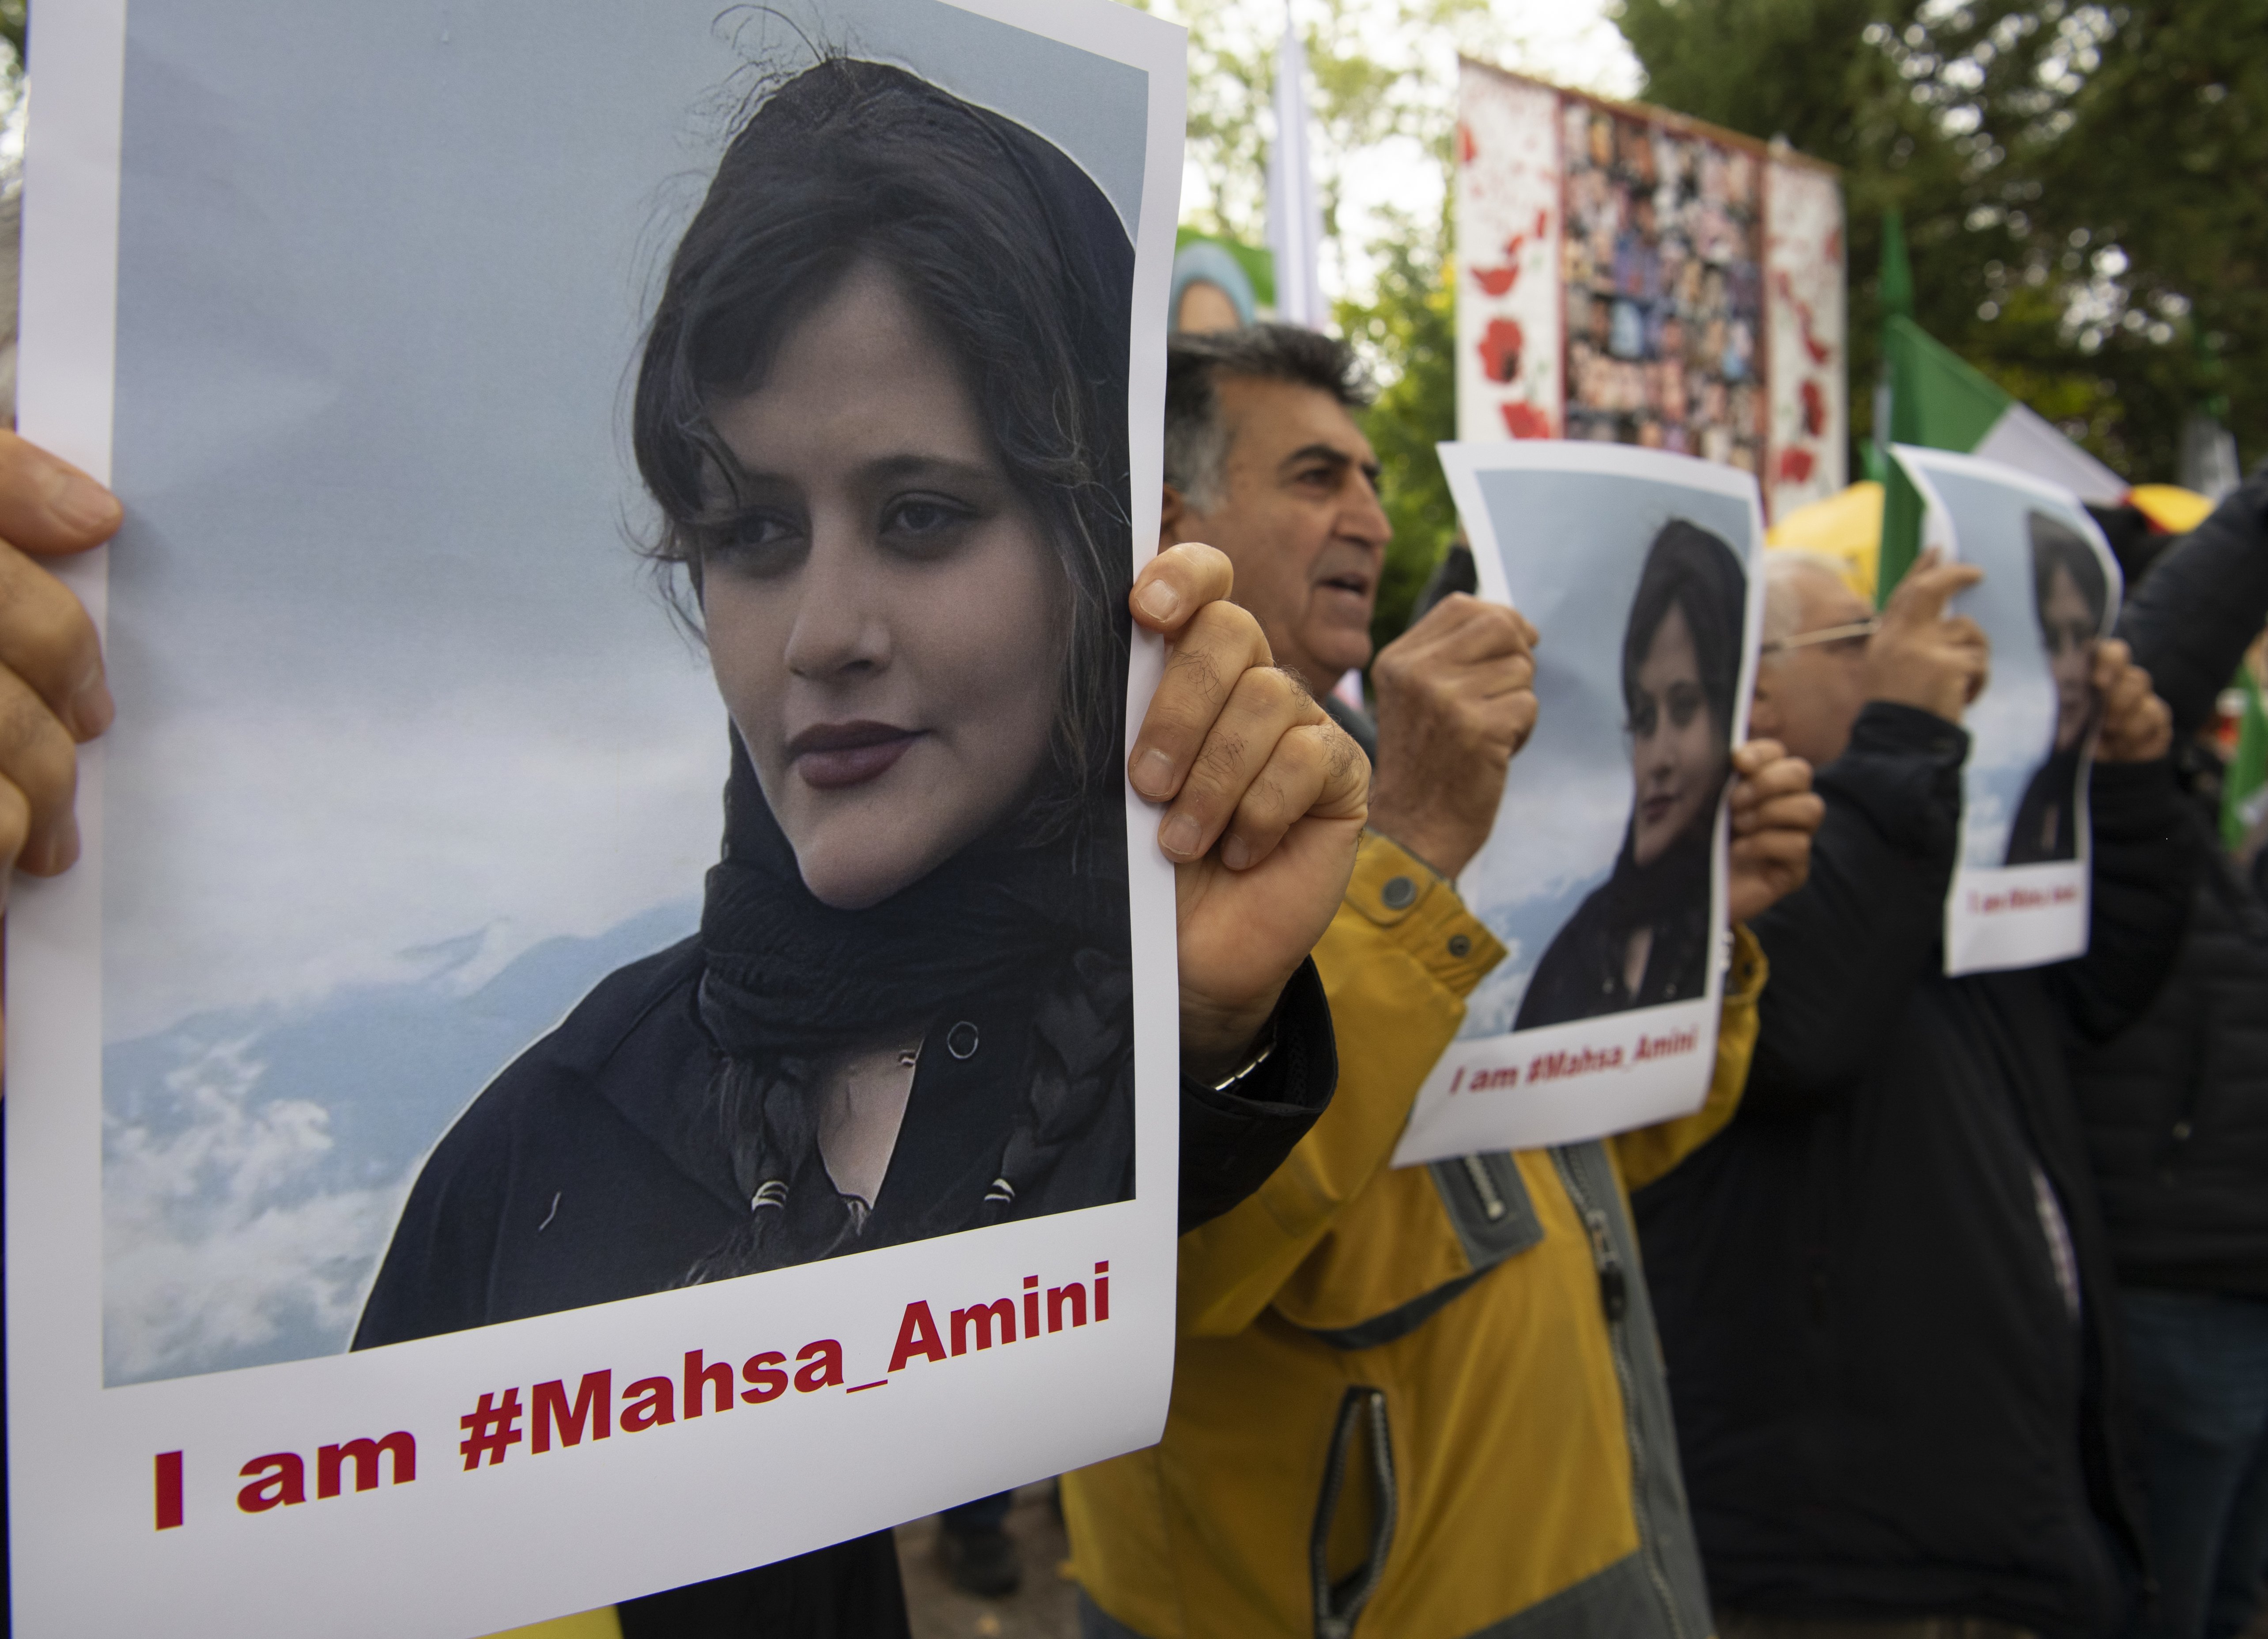 Els Estats Units sancionen la policia moral iraní per la mort de la jove Masha Amini